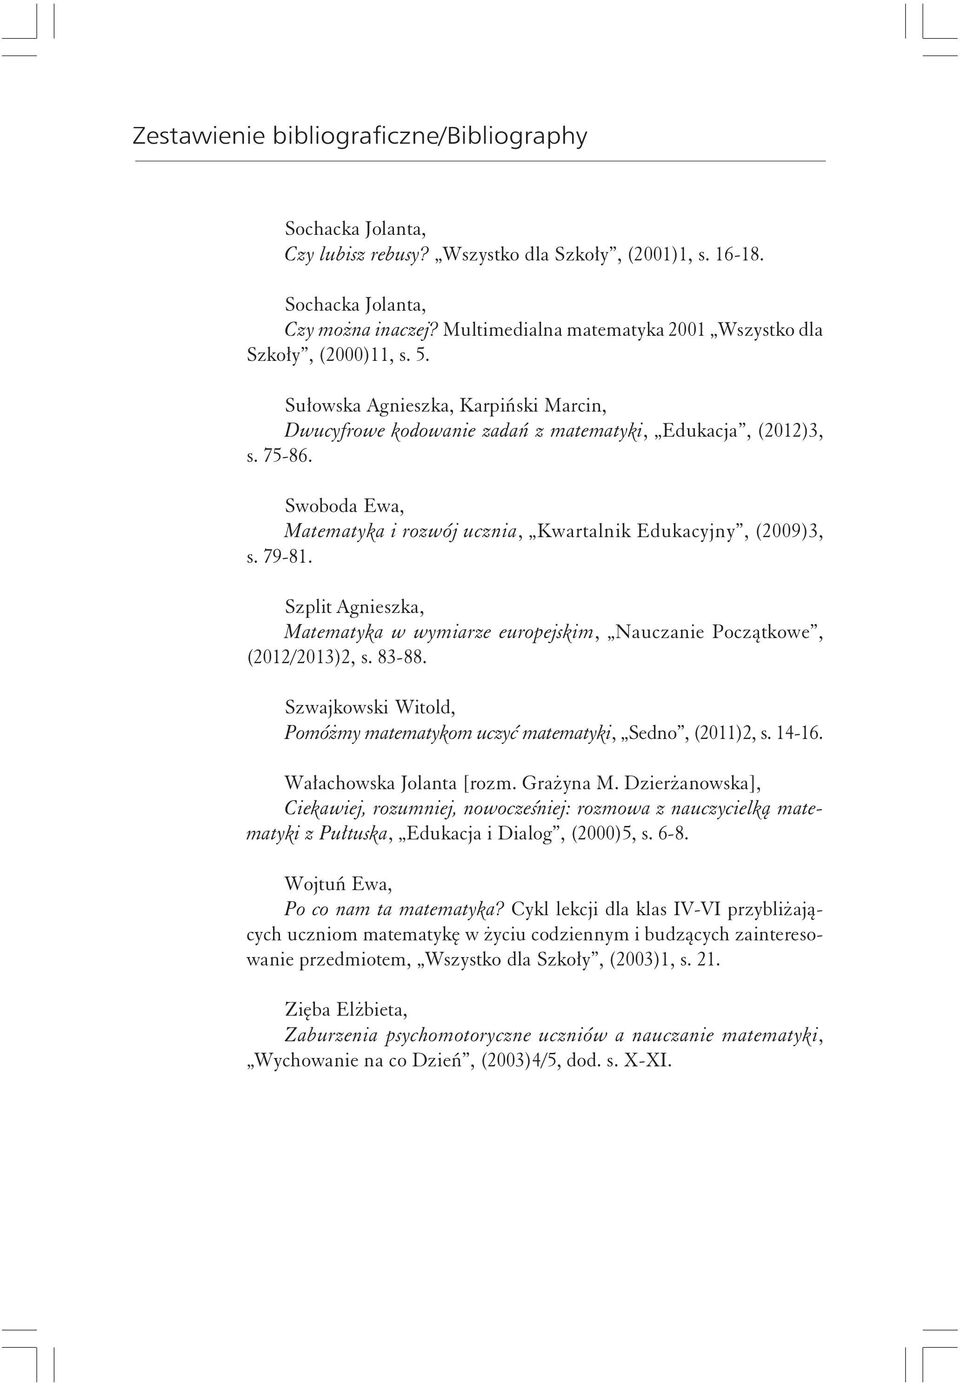 Szplit Agnieszka, Matematyka w wymiarze europejskim, Nauczanie Początkowe, (2012/2013)2, s. 83-88. Szwajkowski Witold, Pomóżmy matematykom uczyć matematyki, Sedno, (2011)2, s. 14-16.